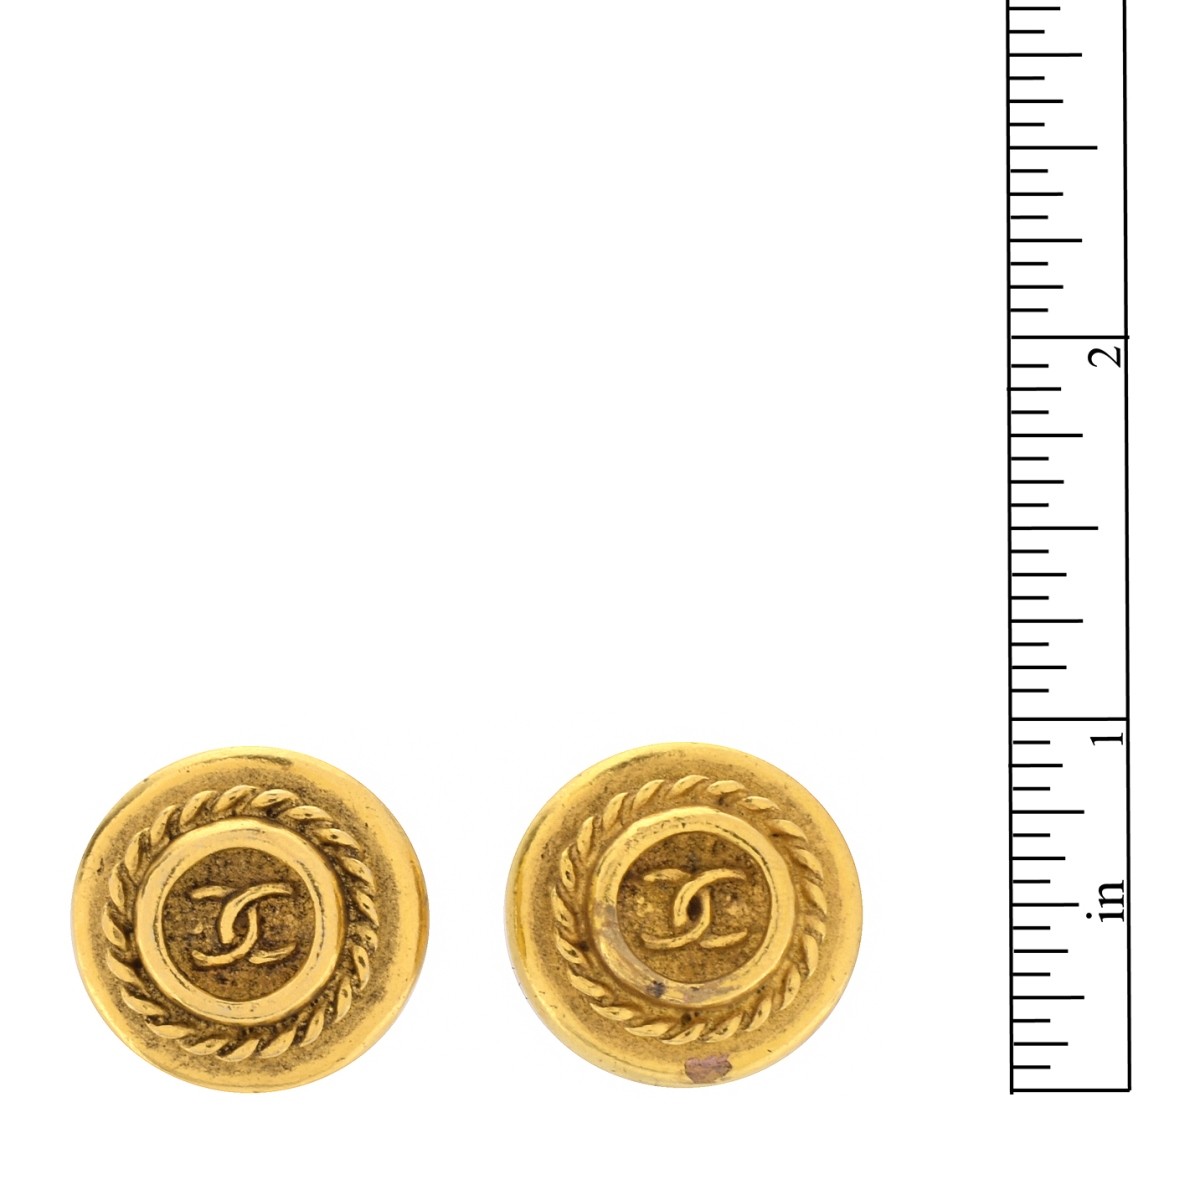 Pair of Chanel Monogrammed Earrings